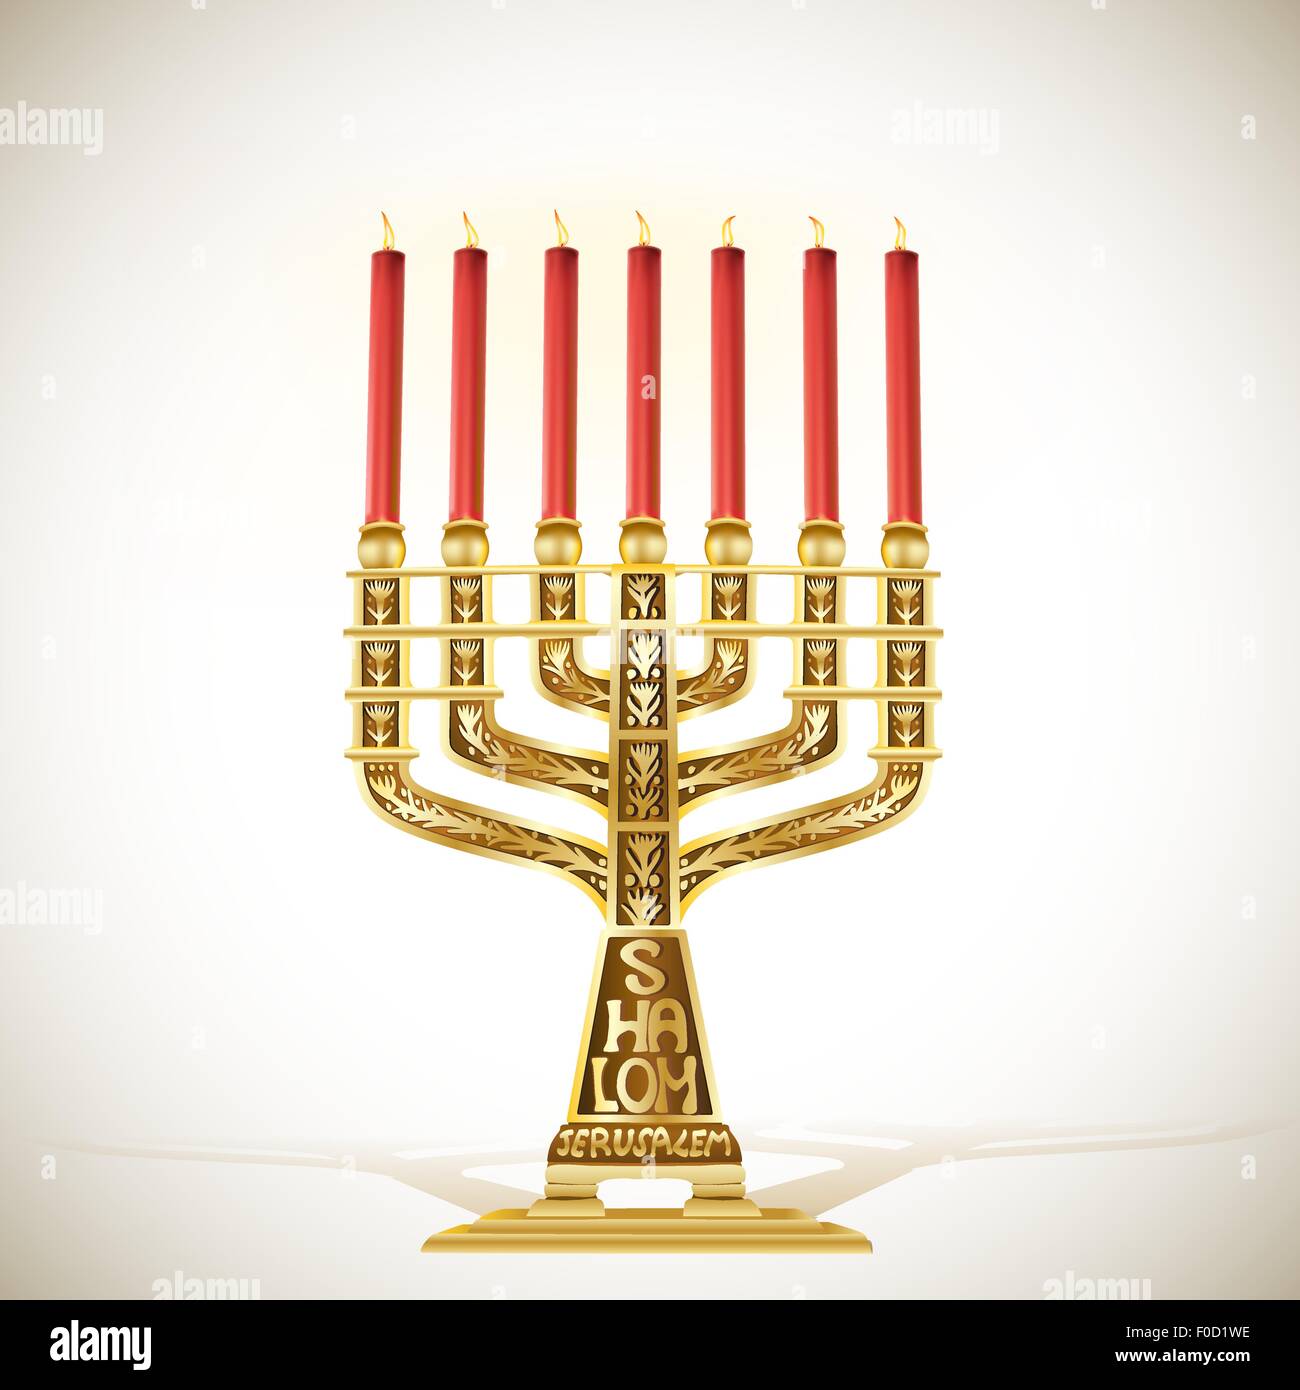 Illustrazione di golden menorah con sette candele Illustrazione Vettoriale